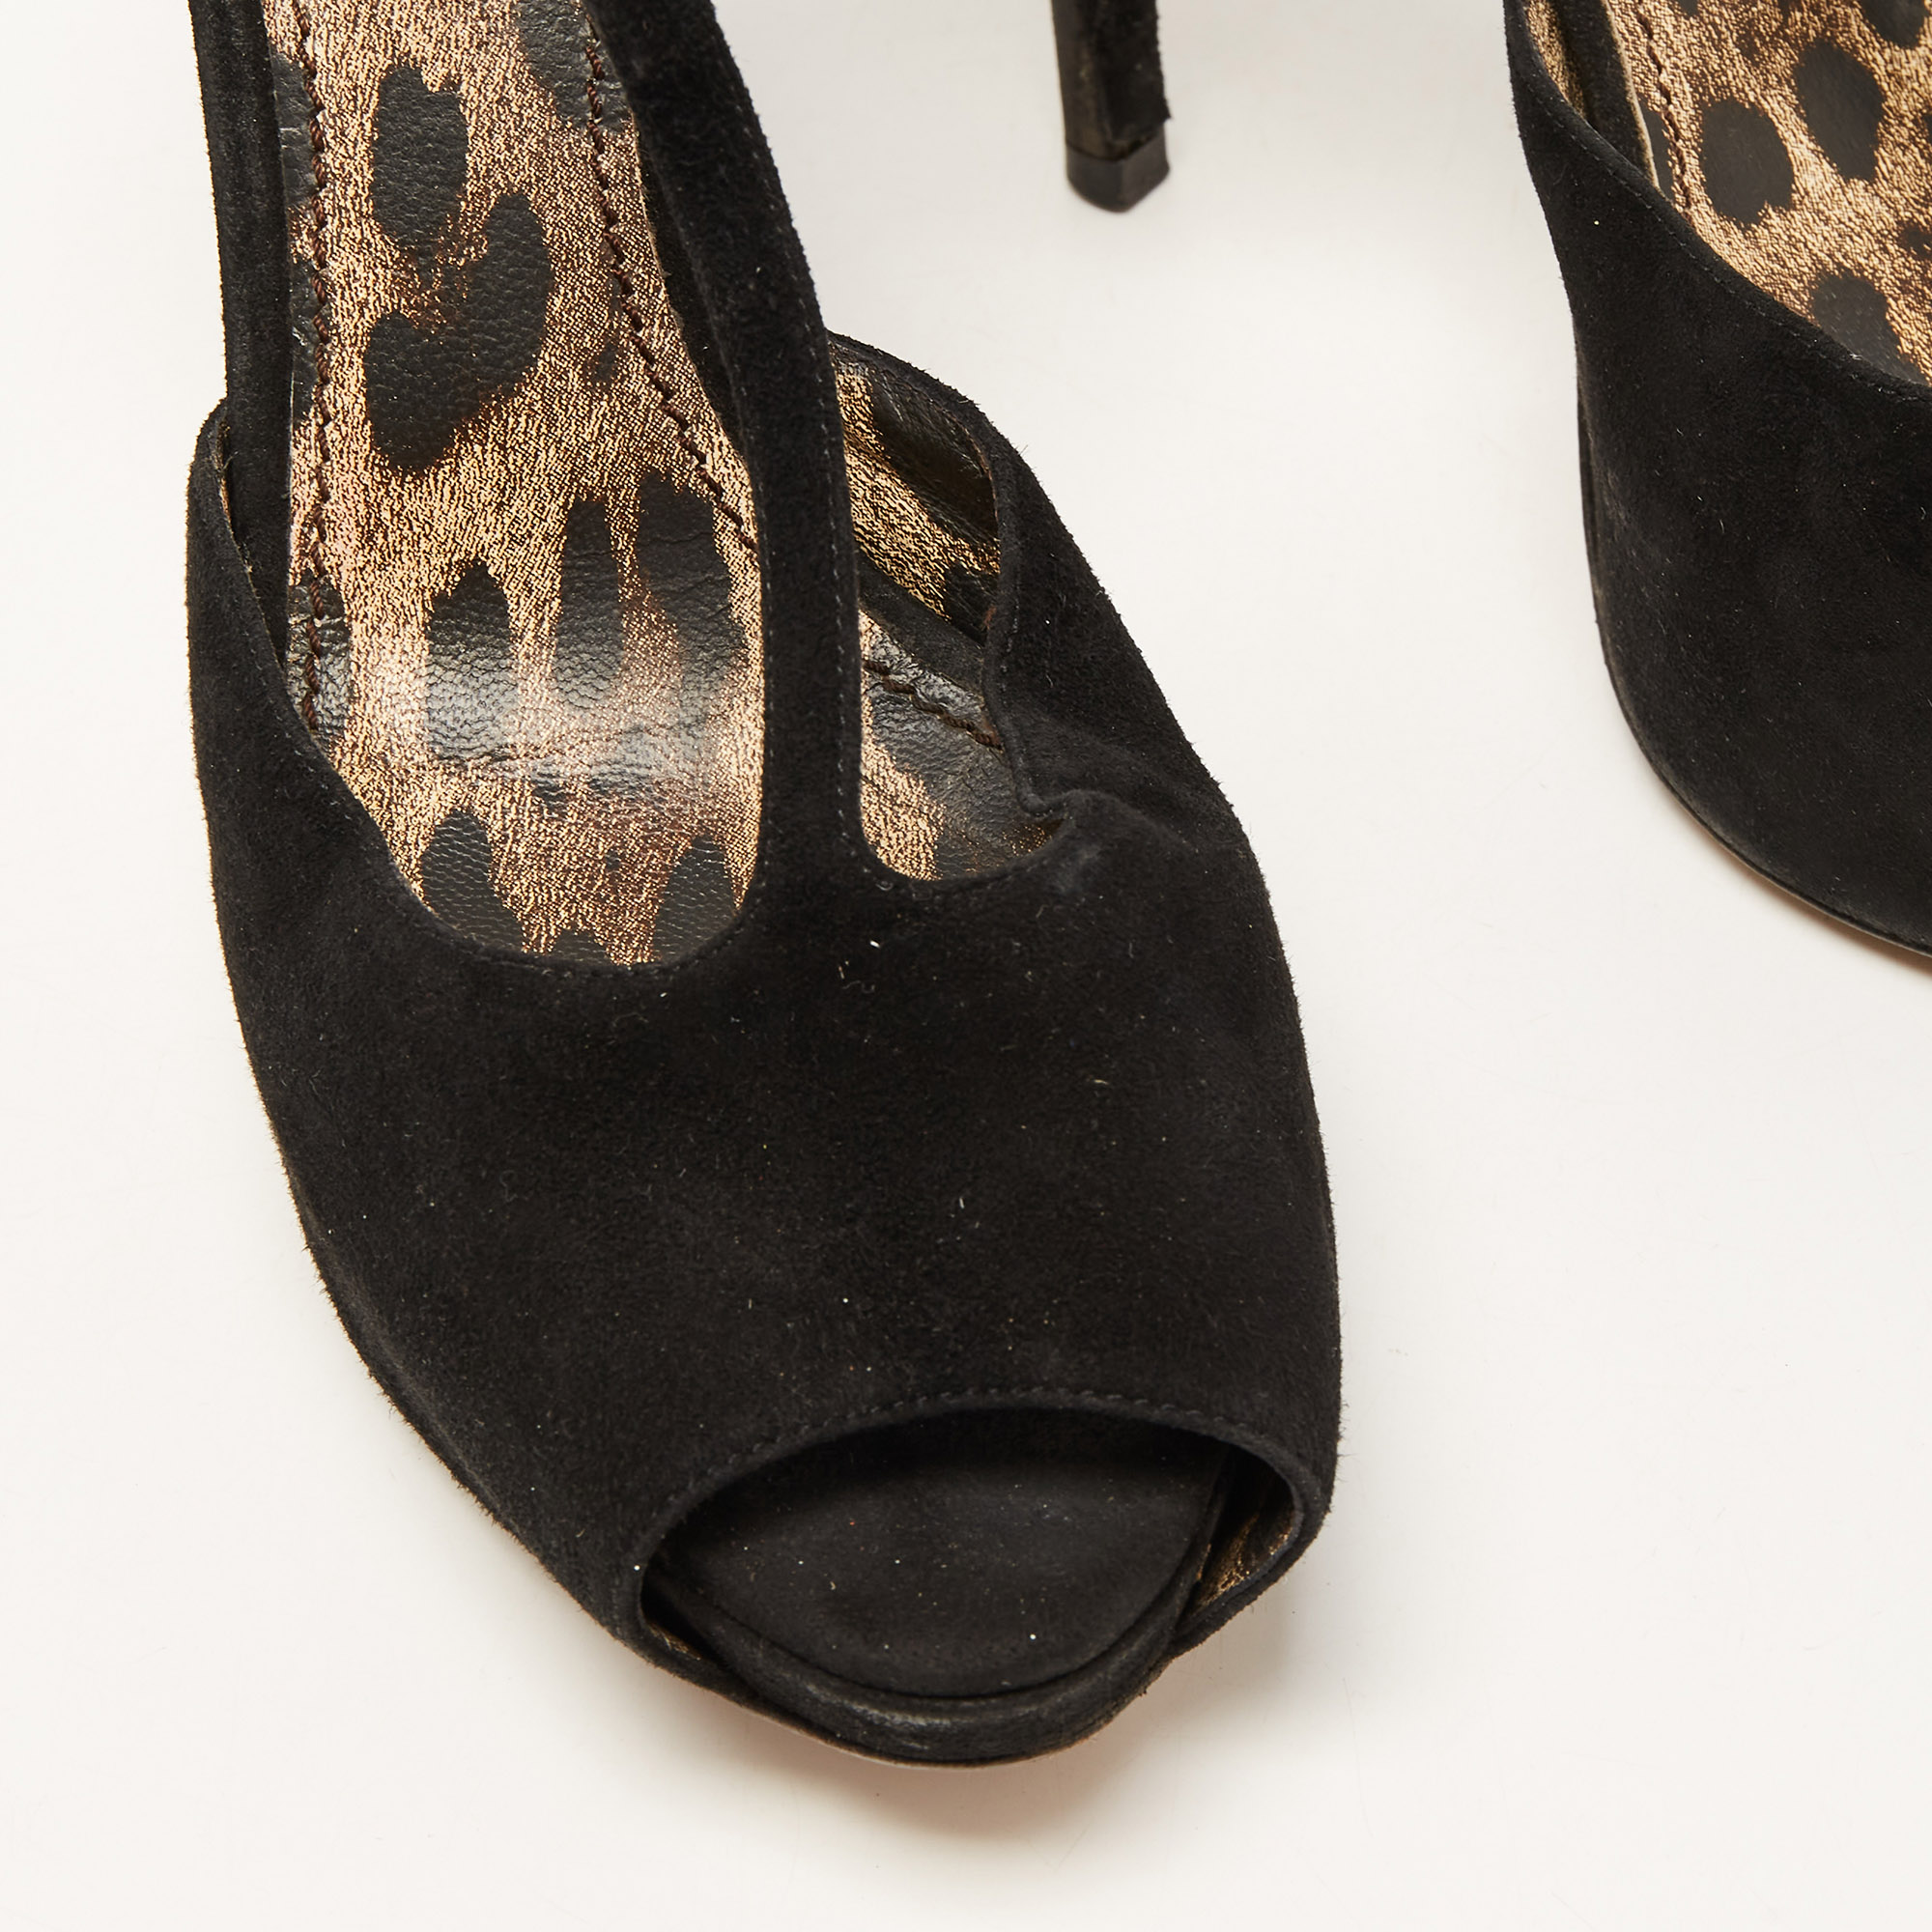 Dolce & Gabbana Black Suede Ankle Strap Platform Sandals Size 40